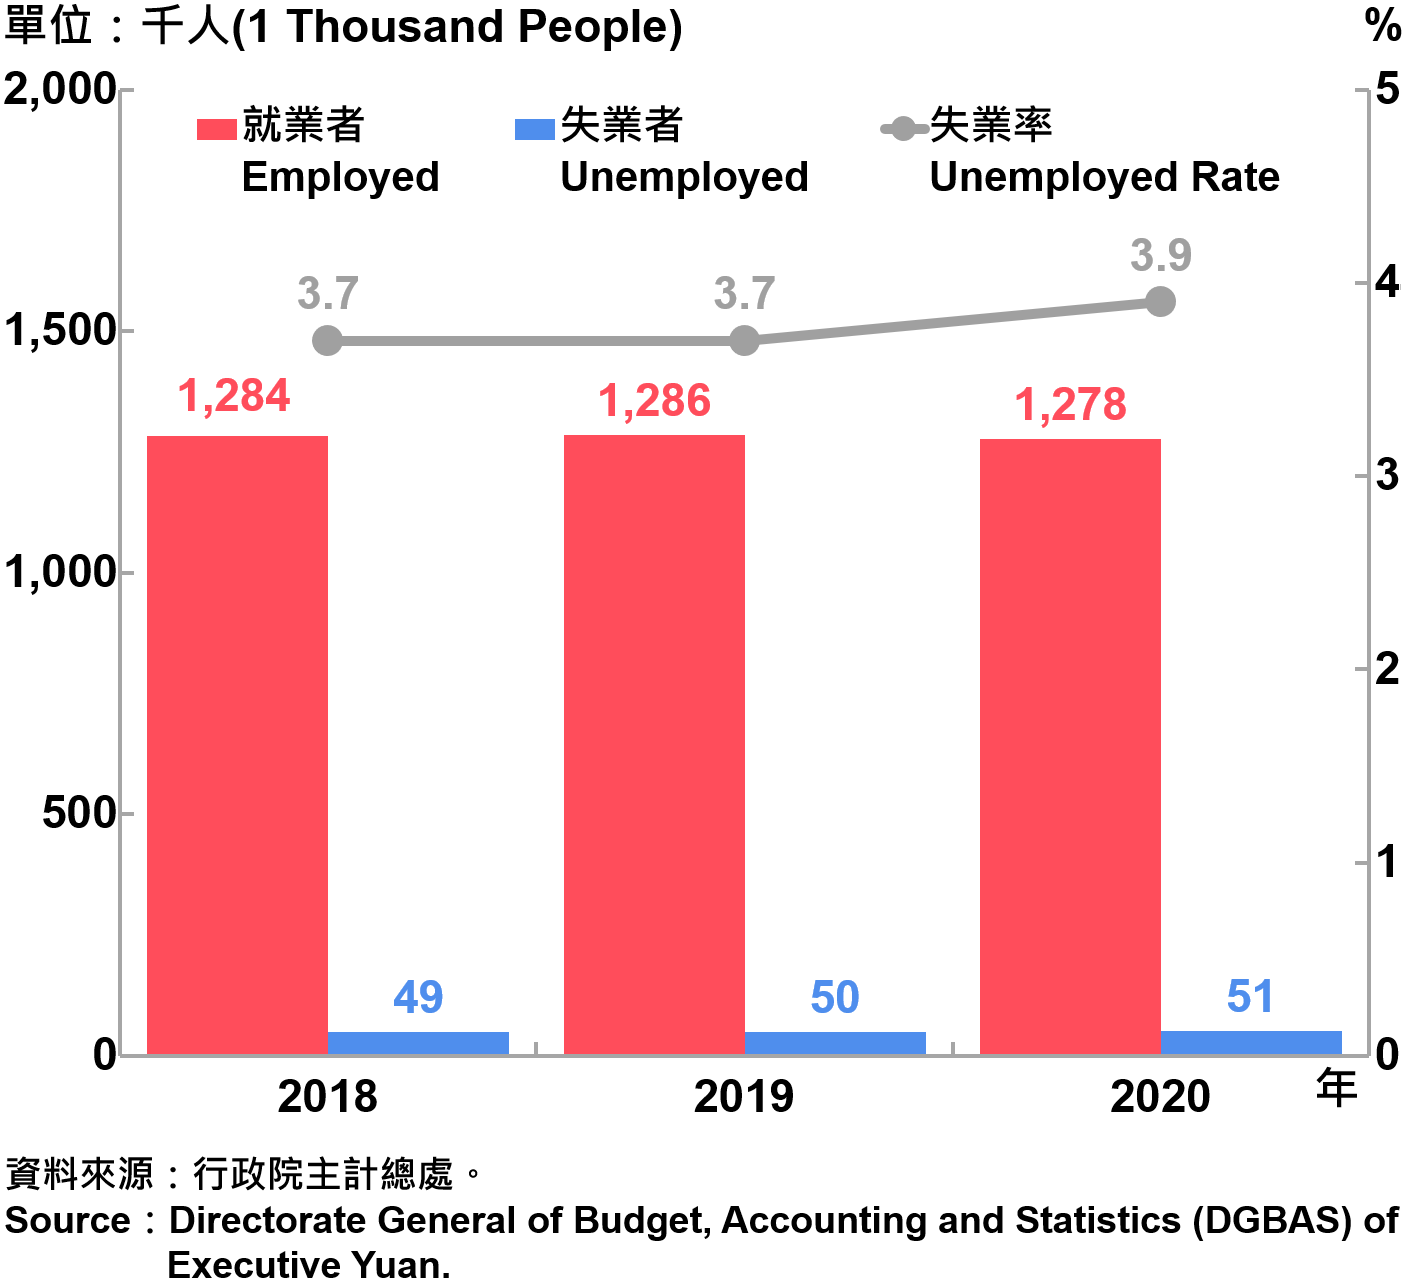 臺北市勞動力人數統計—2020 Labor Force Statistics in Taipei City—2020